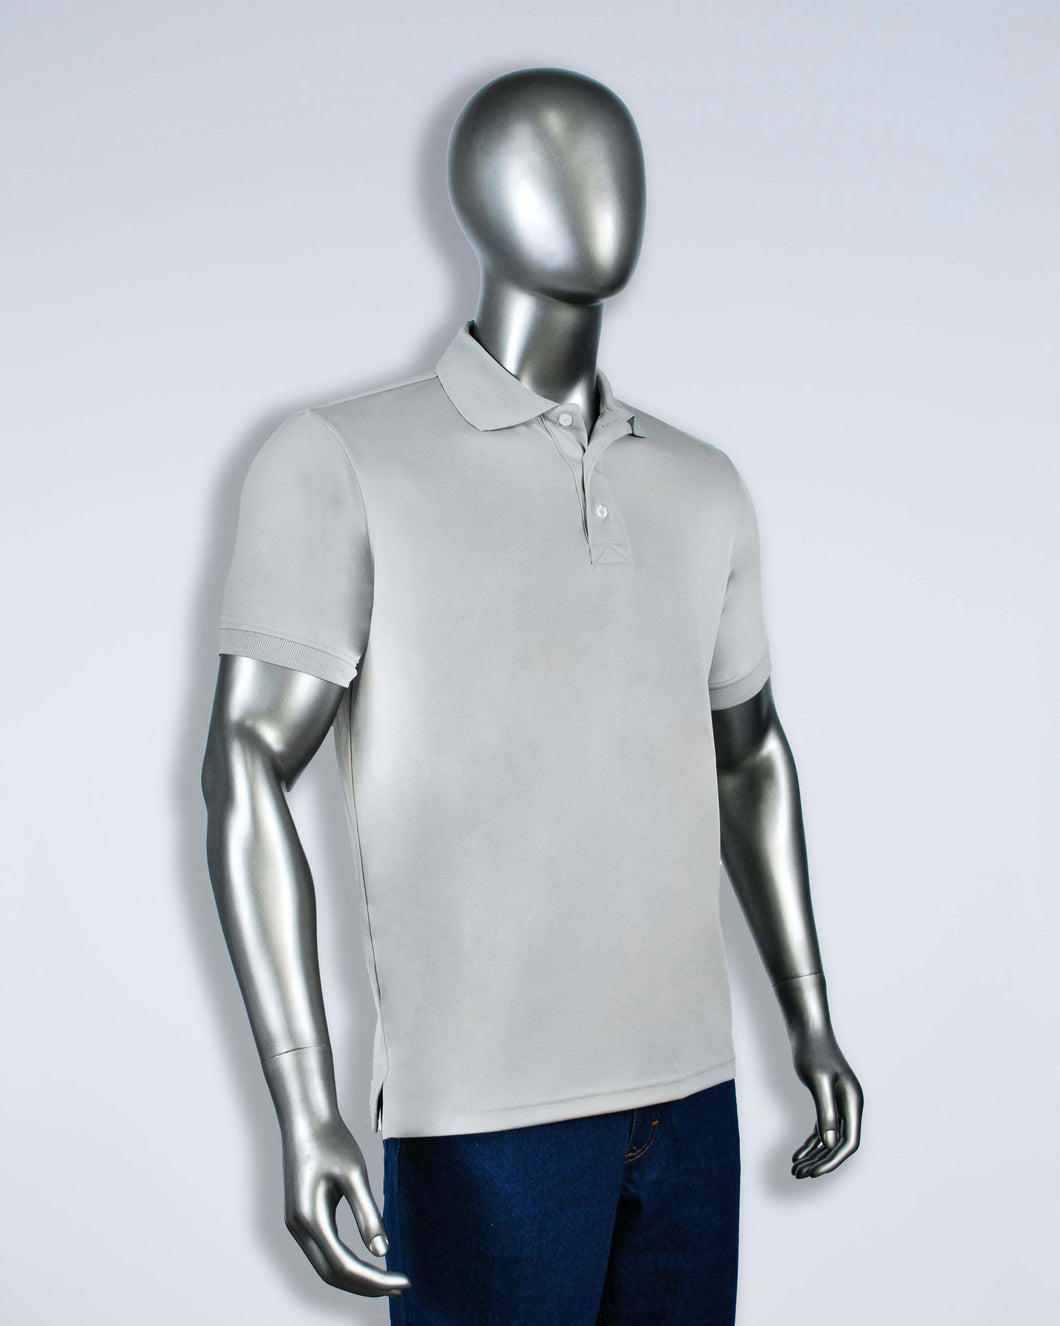 Men's gray polyester polo